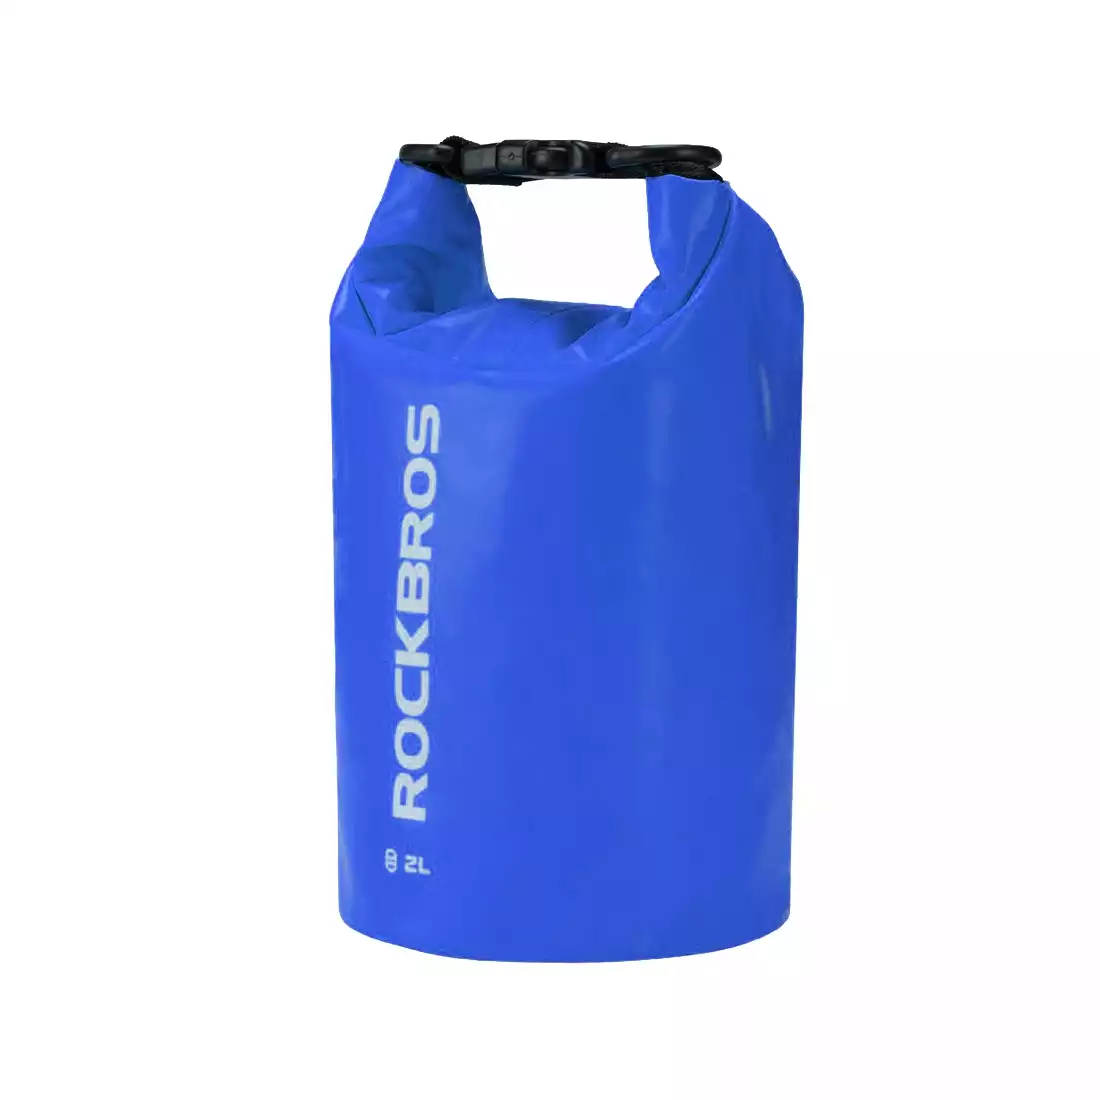 Rockbros wodoodporny plecak/worek 2L, niebieski ST-001BL